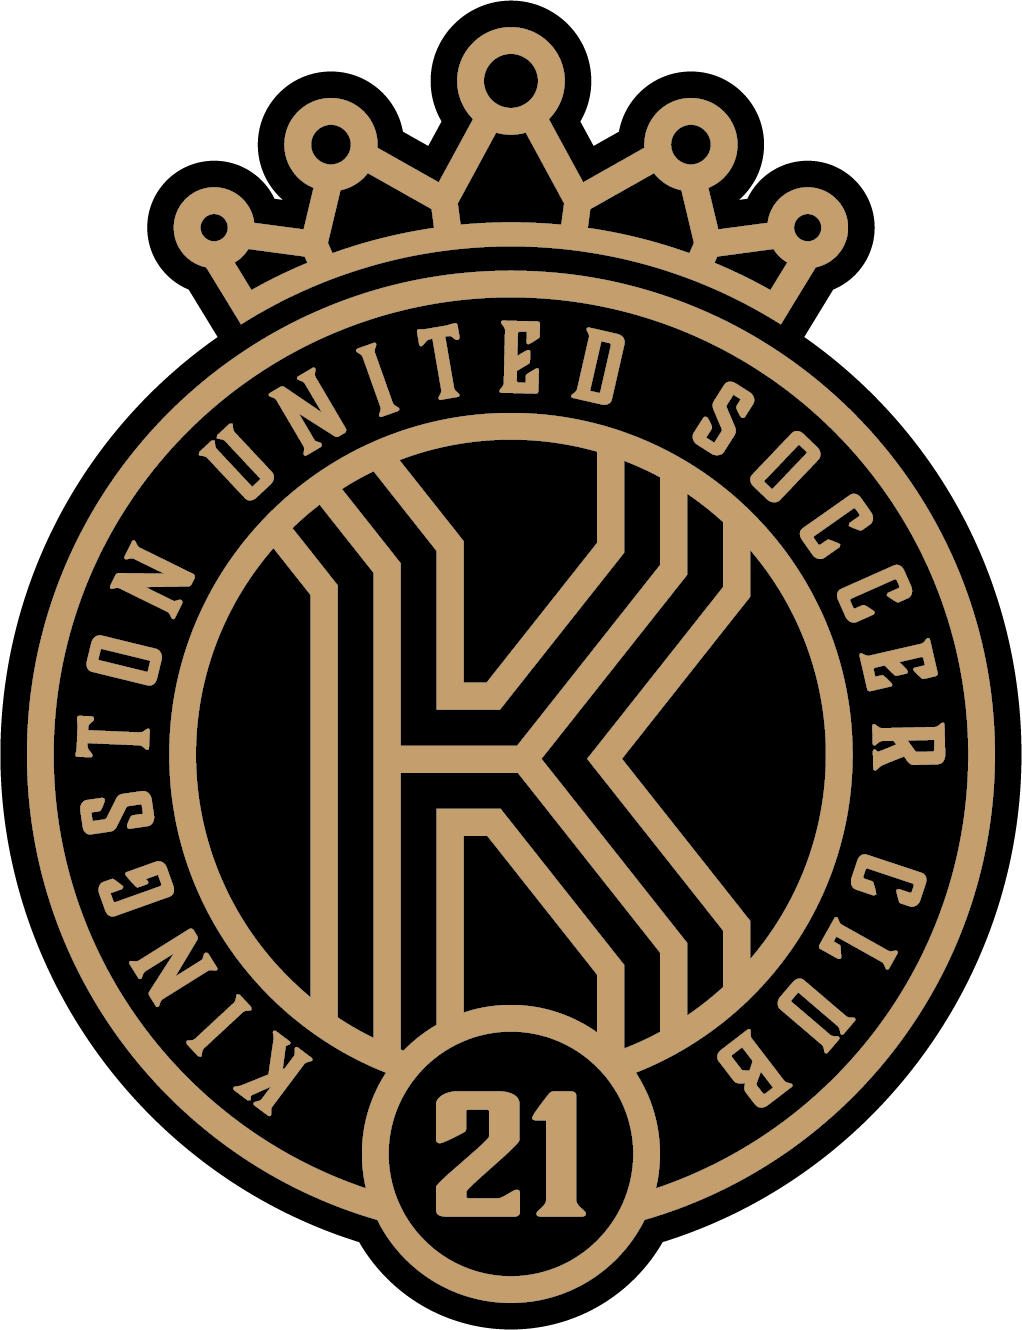 Kingston United Soccer Club Sponsor